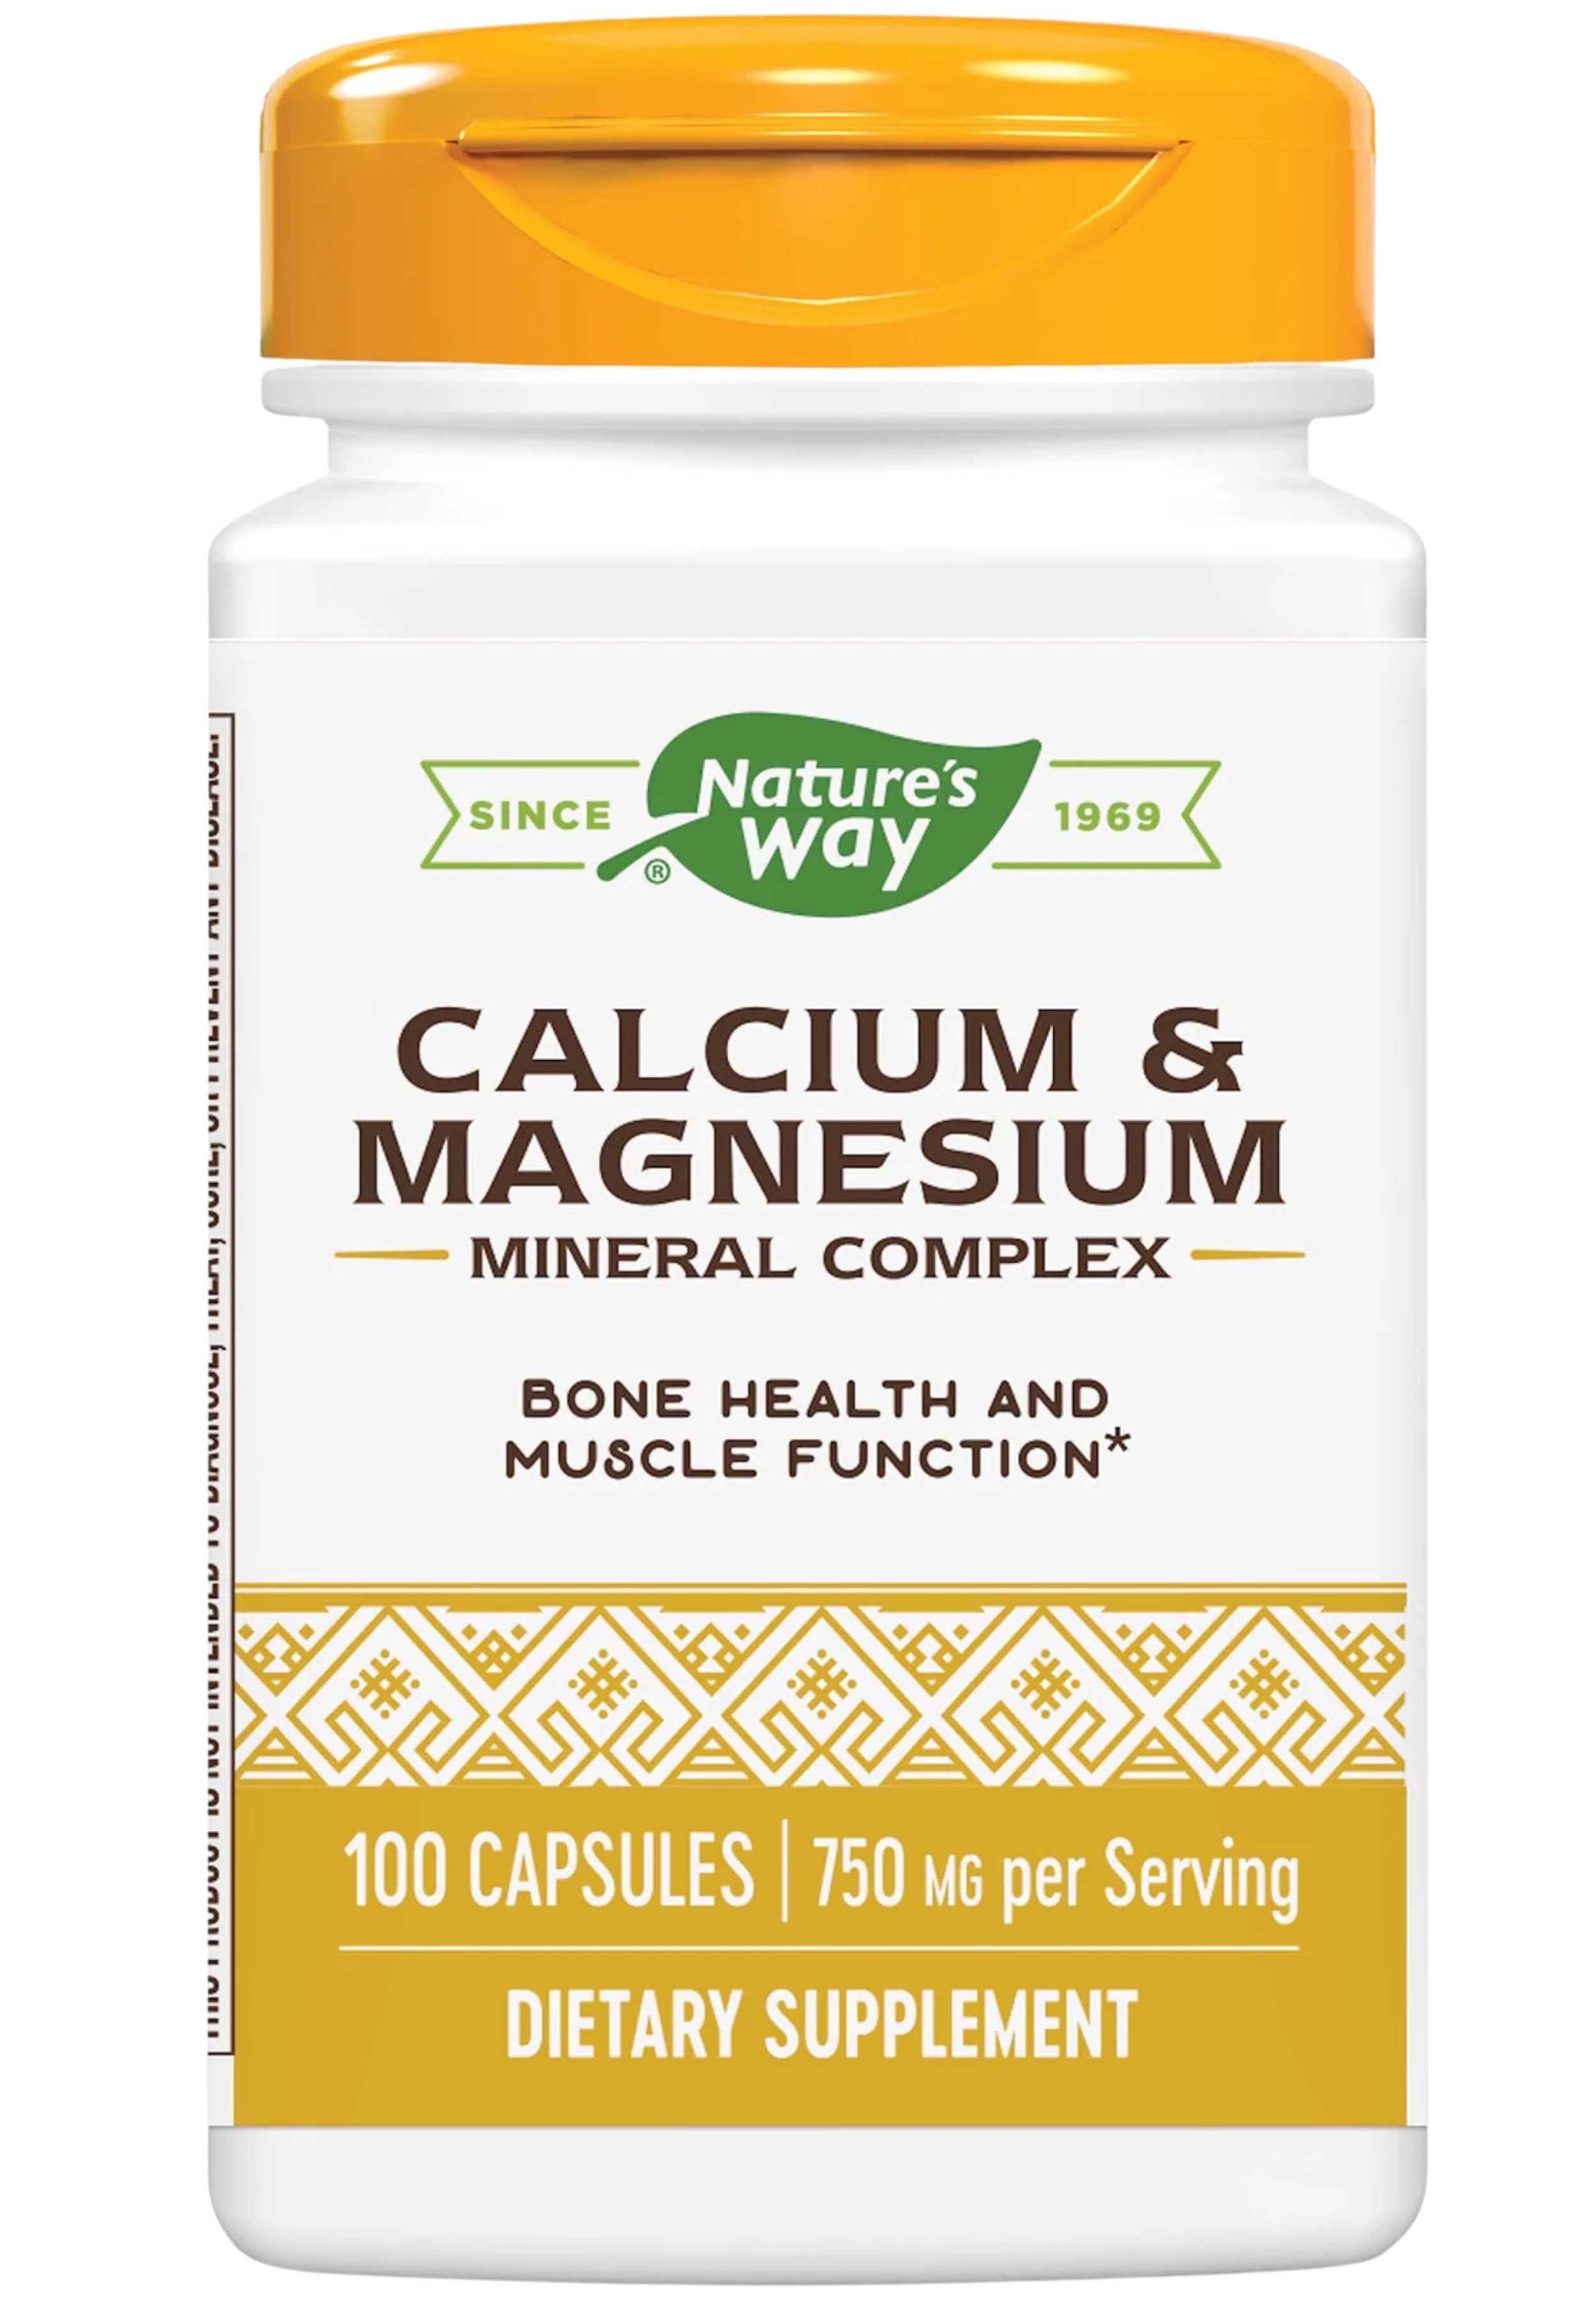 Nature's Way Calcium & Magnesium